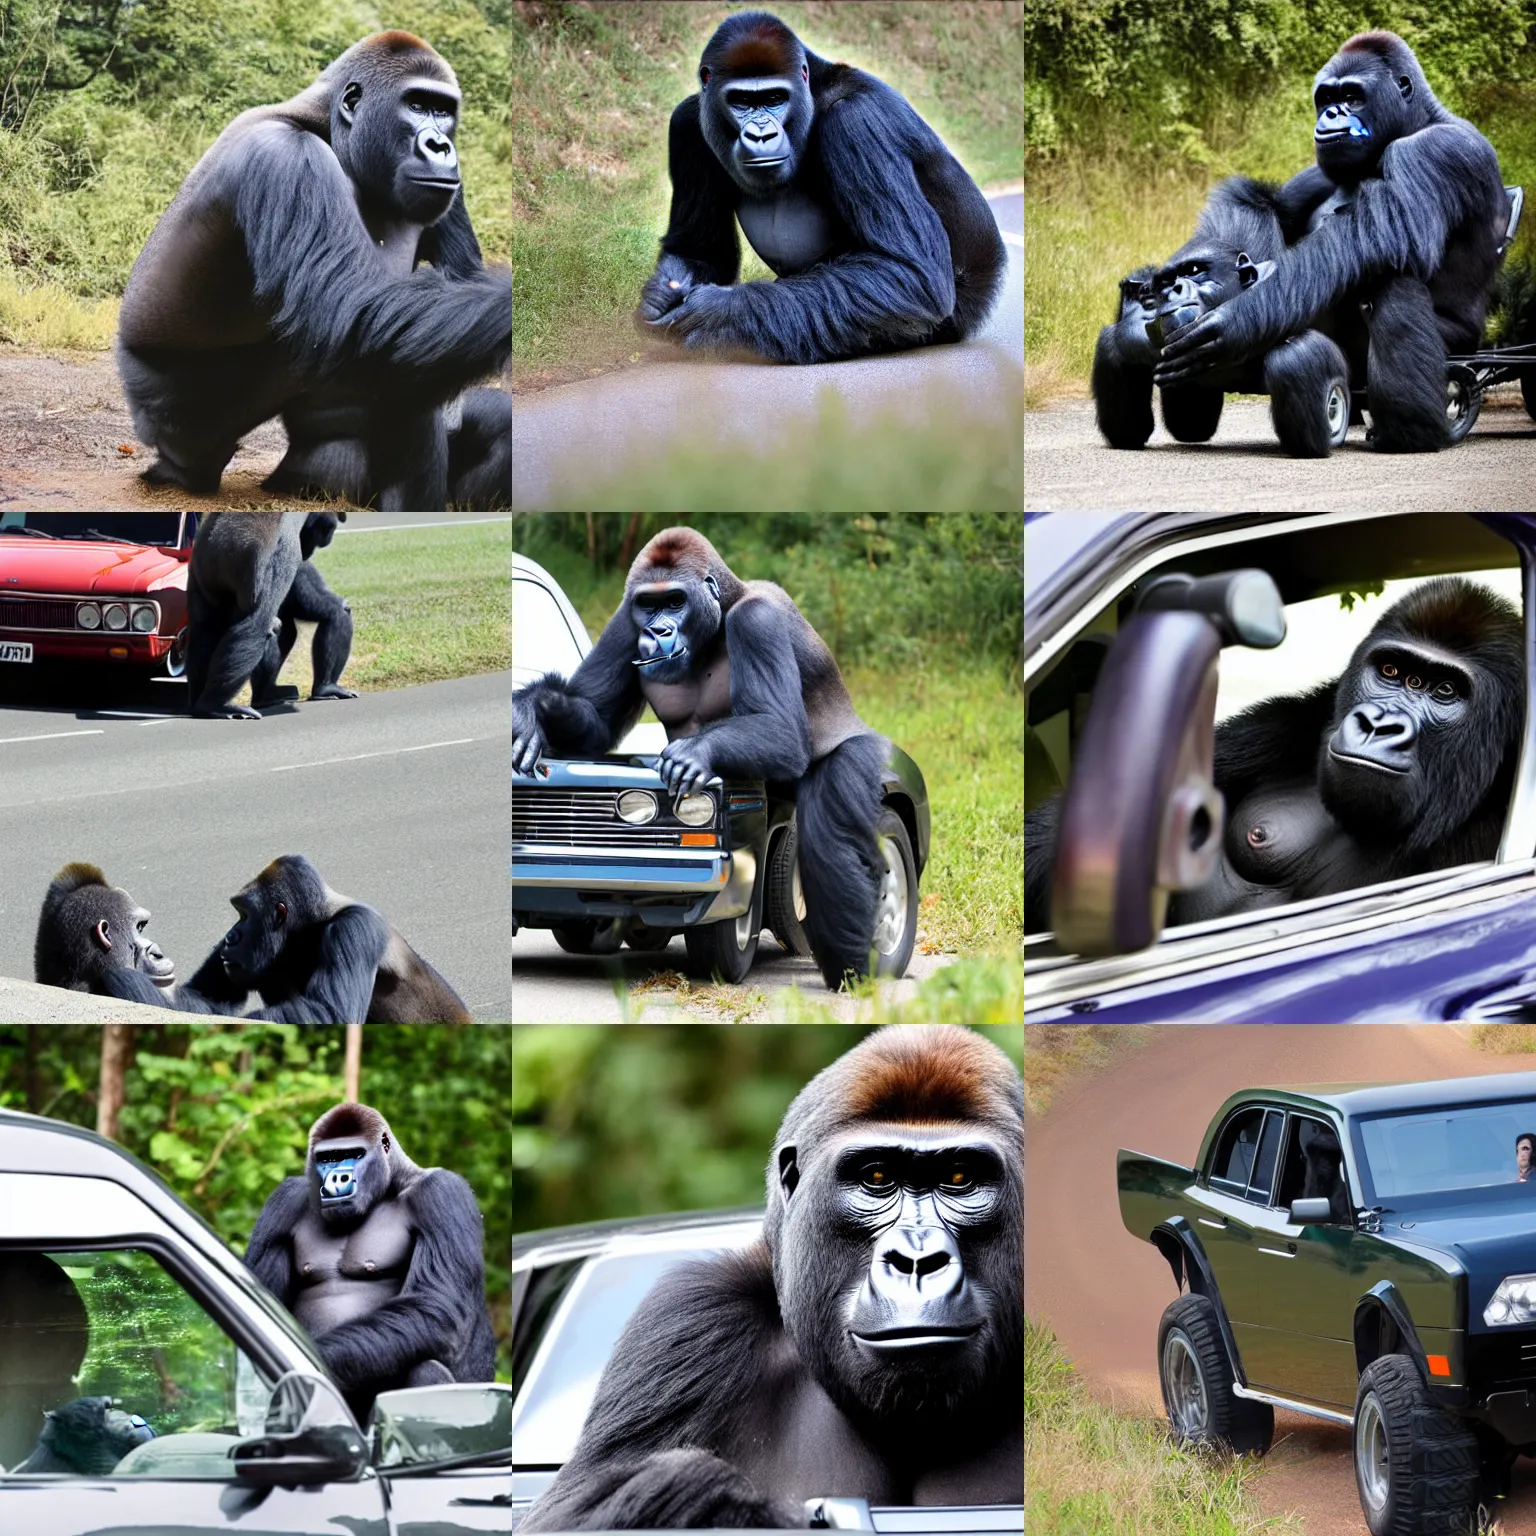 Prompt: gorilla drivinga car